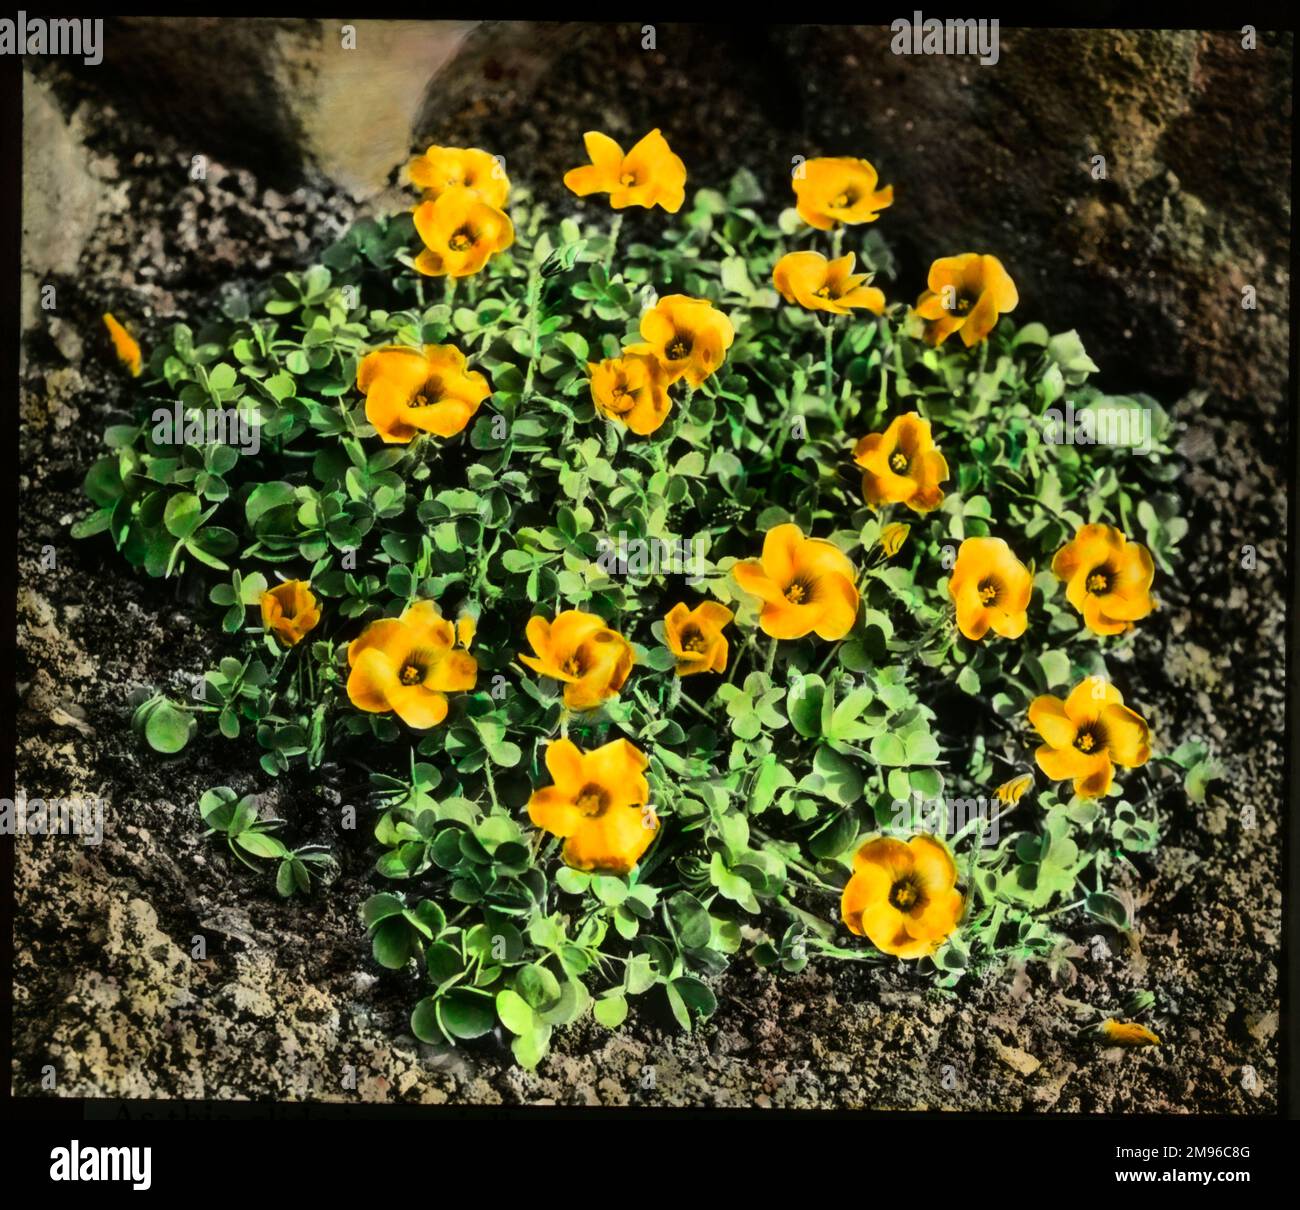 Oxalis lobata o Perdicaria (Sorrel), pianta perenne della famiglia delle Oxalidaceae, con fiori giallo-arancio. Foto Stock